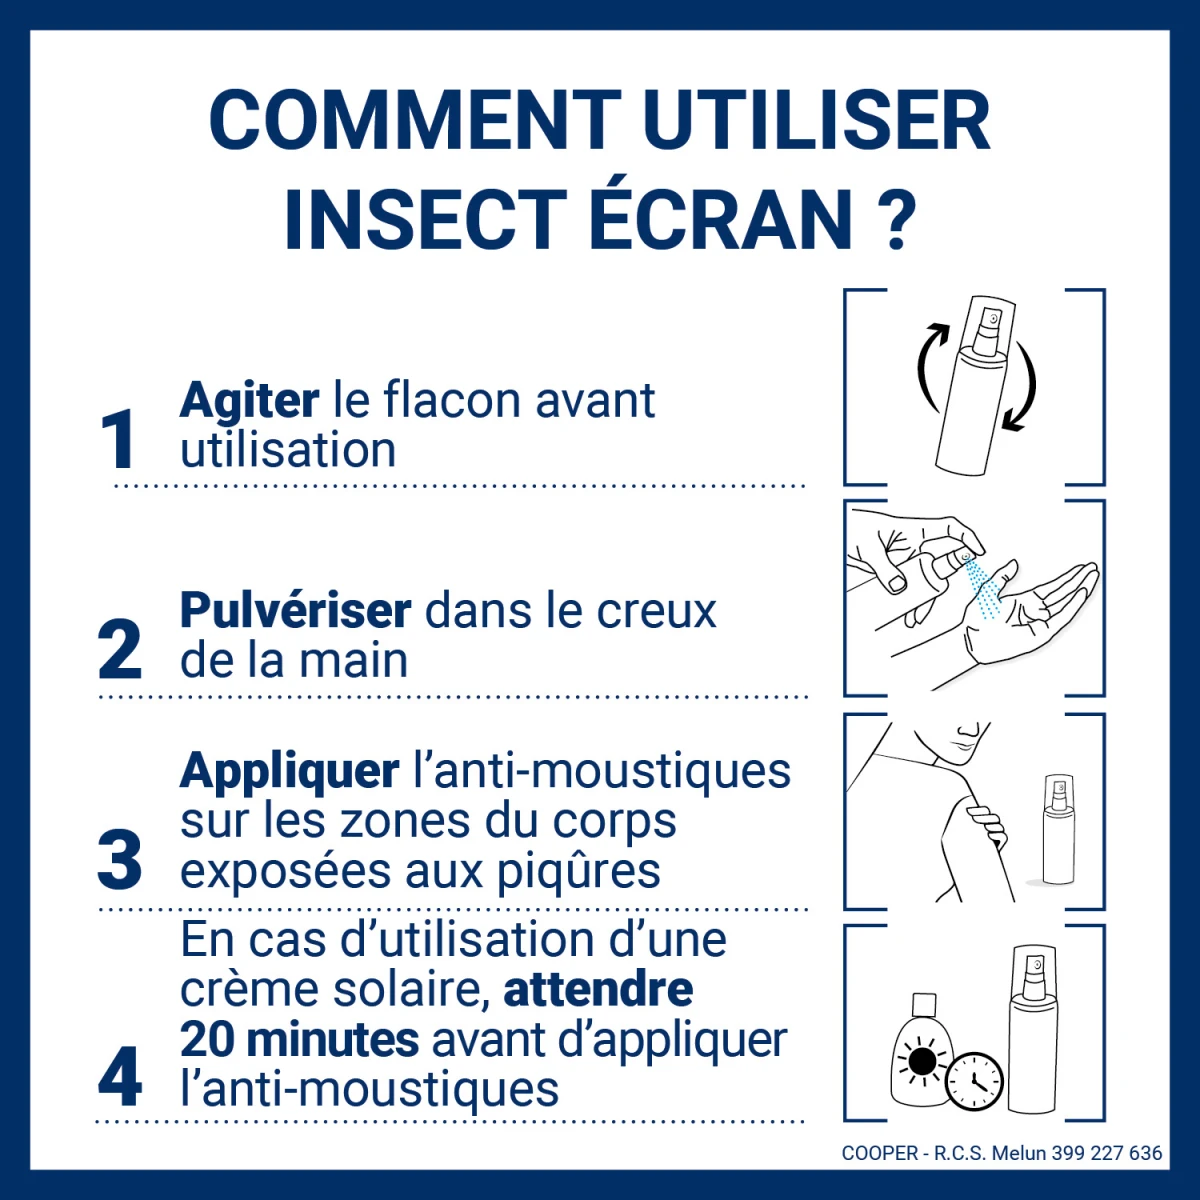 INSECT ECRAN - Anti-moustiques - répulsif - Zones Infestées